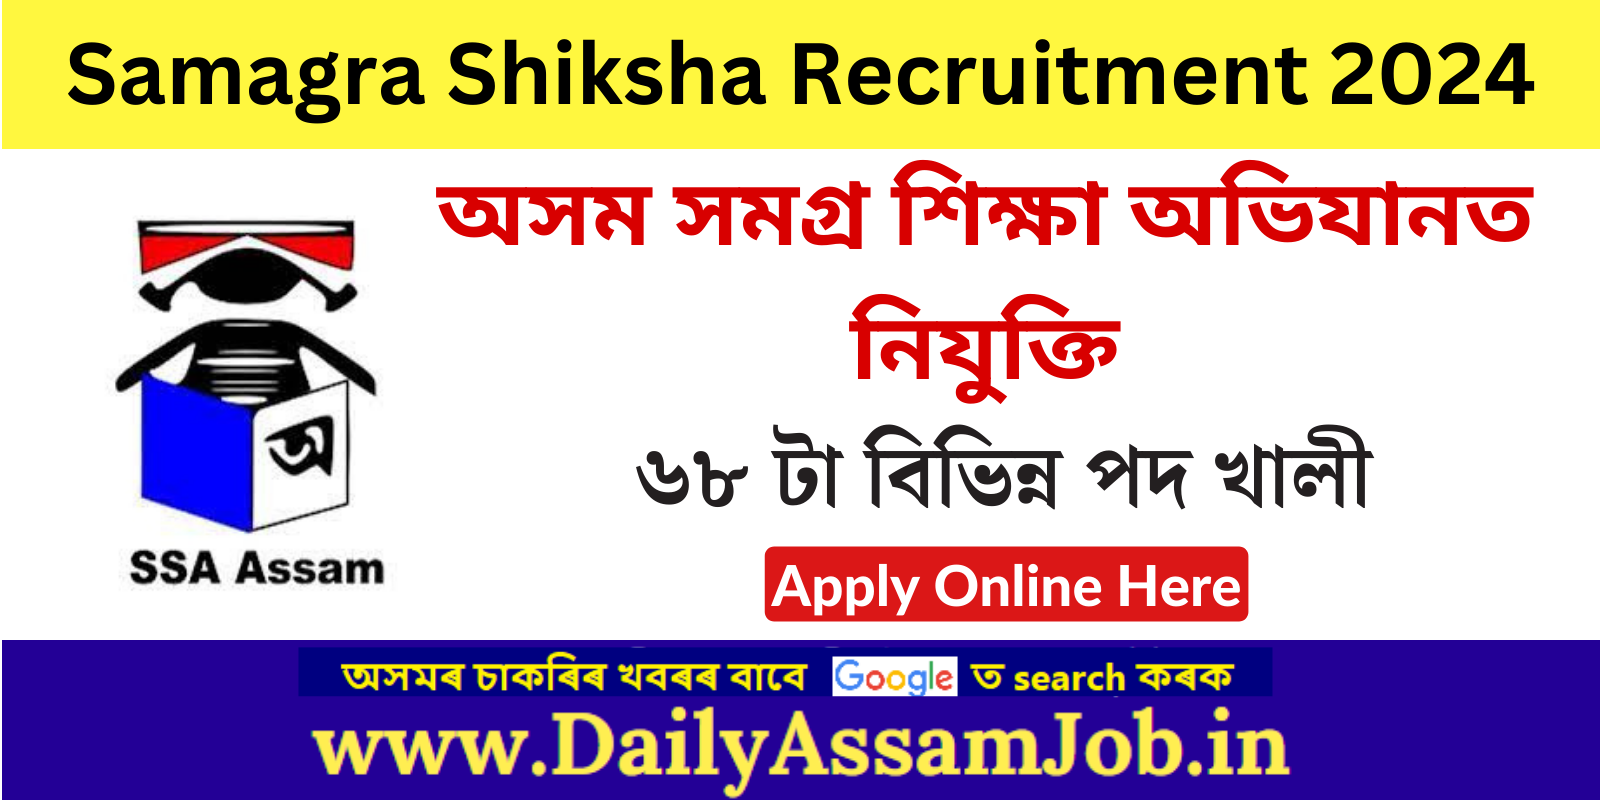 Samagra Shiksha Recruitment 2024